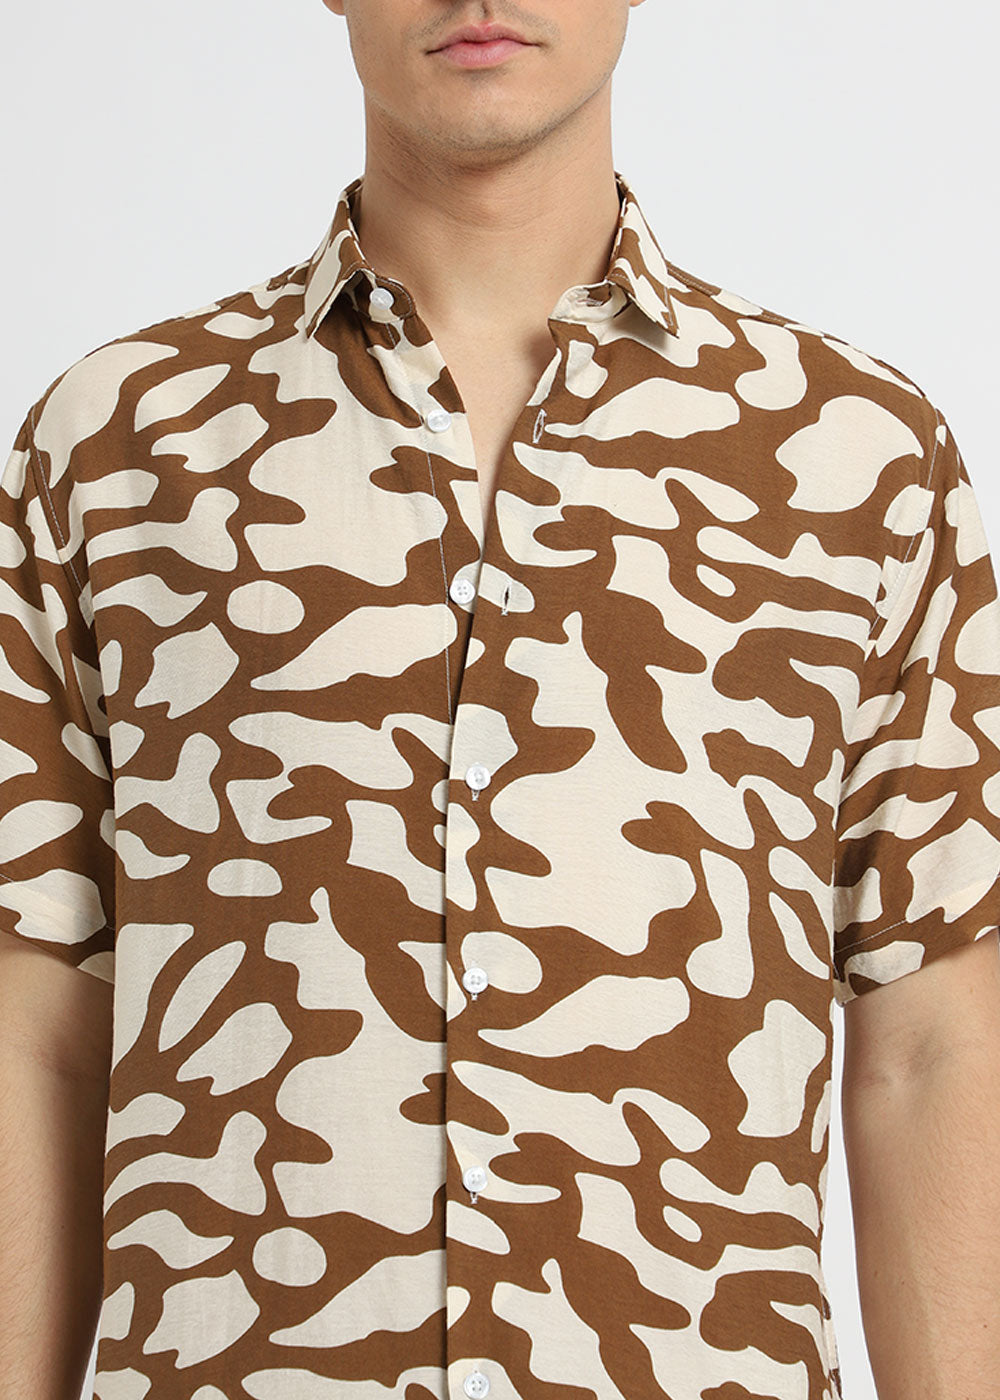 Brown Abstract Printed Shirt